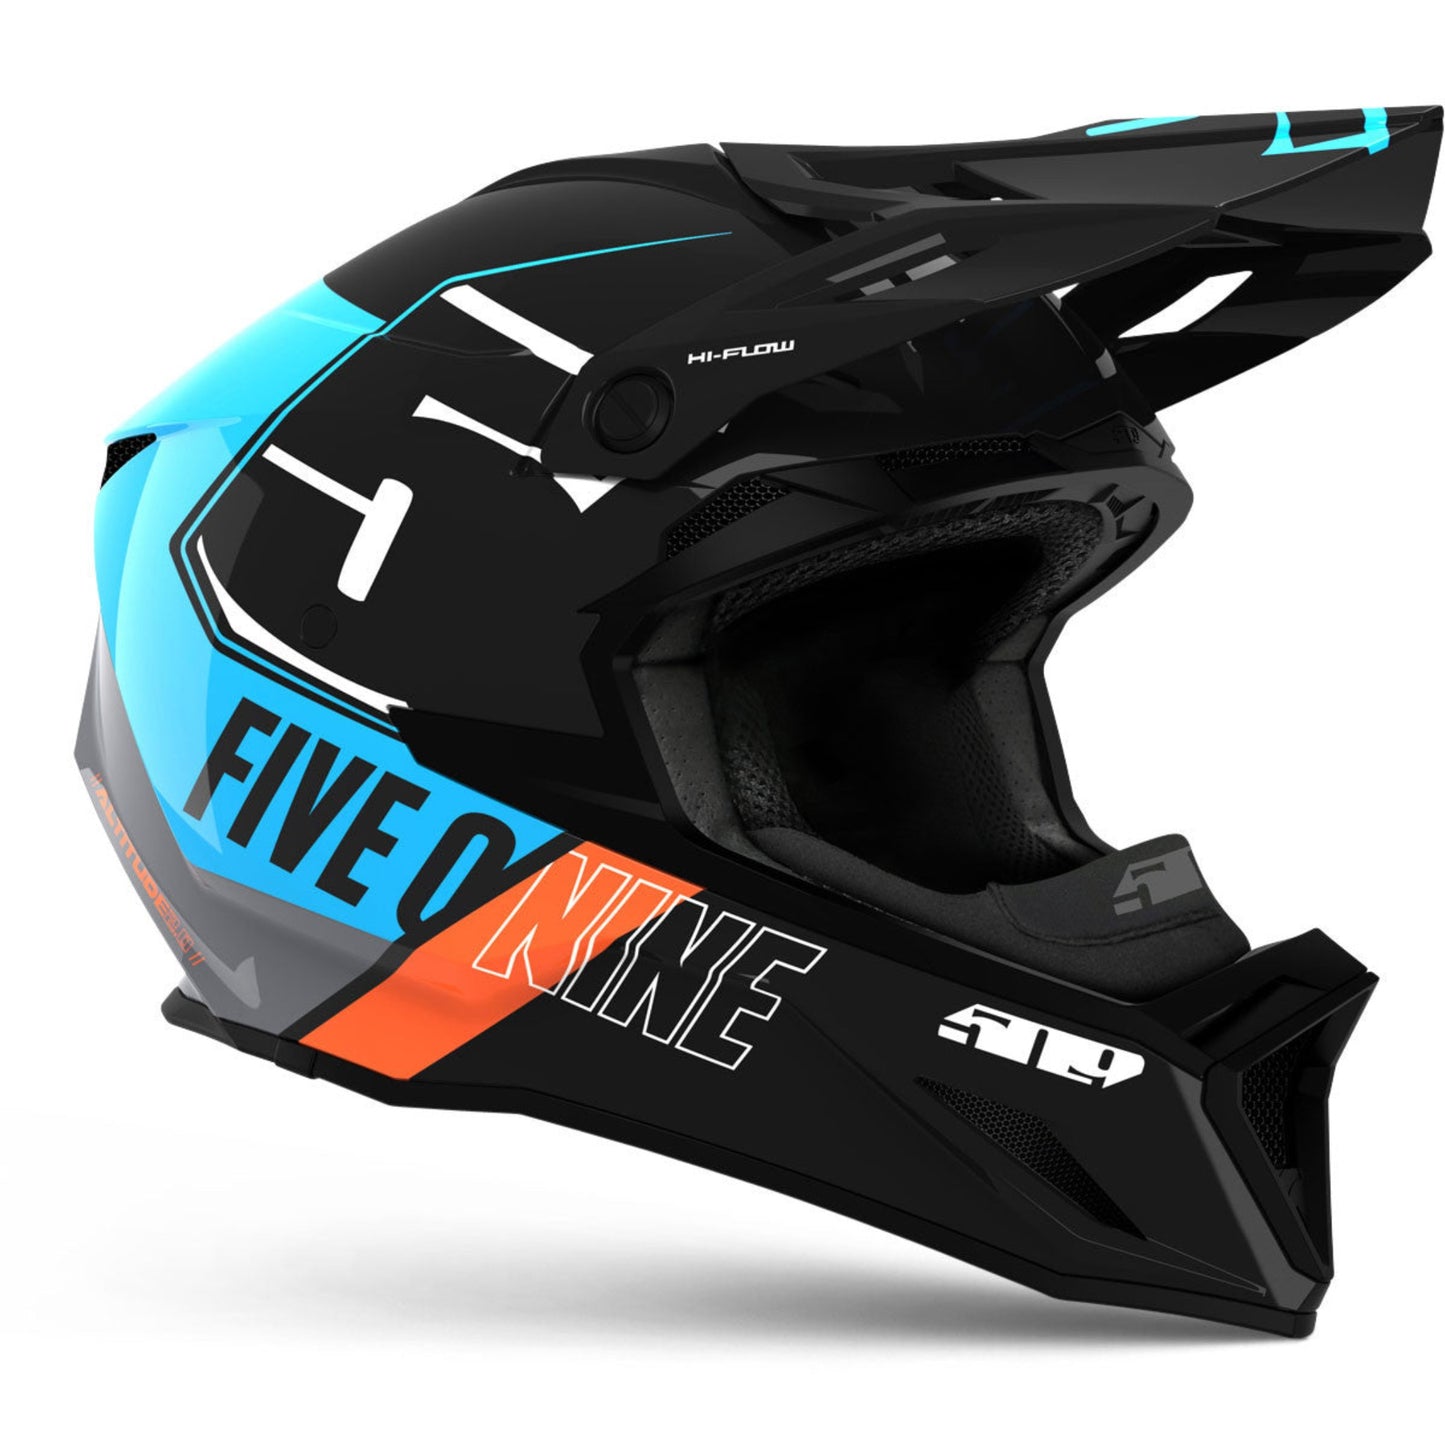 Altitude 2.0 Hi-Flow Helmet